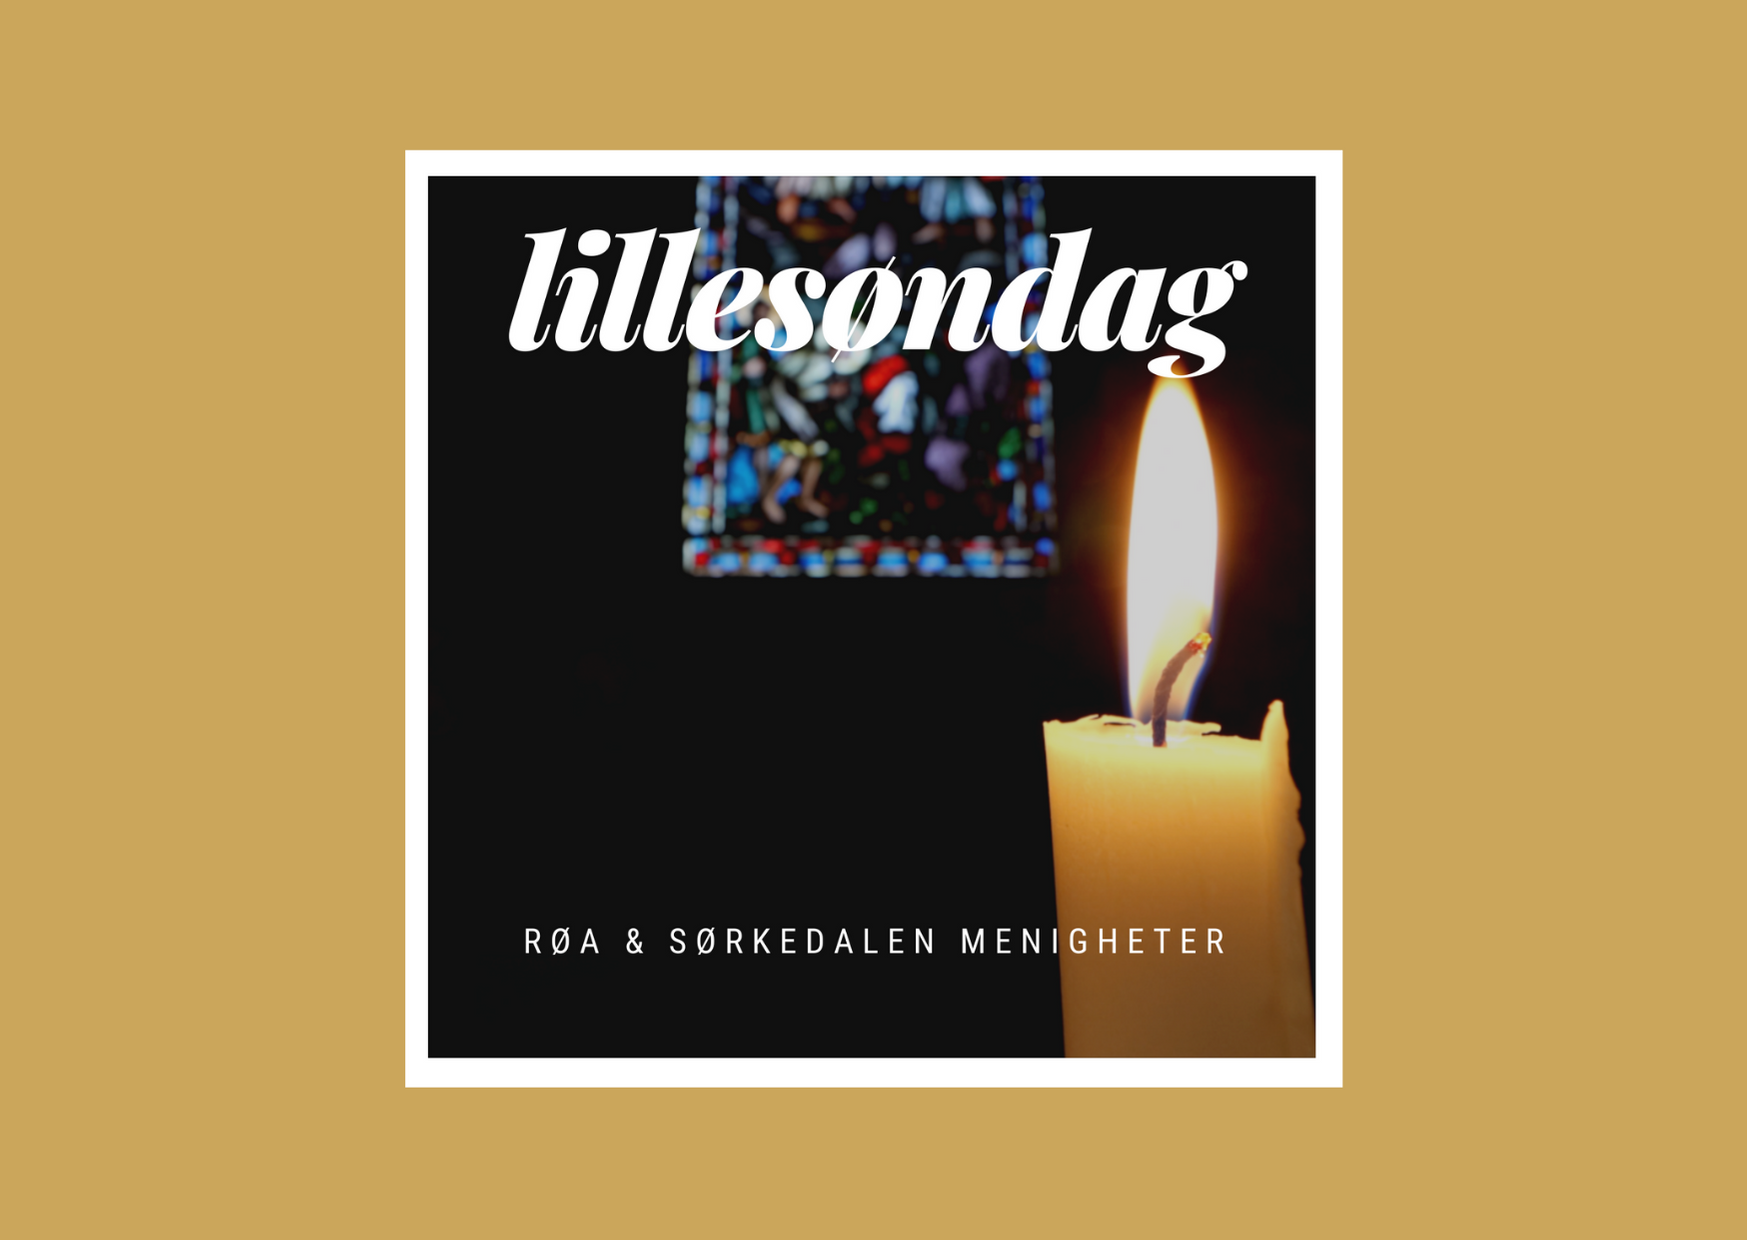 Podcast: "Lillesøndag"